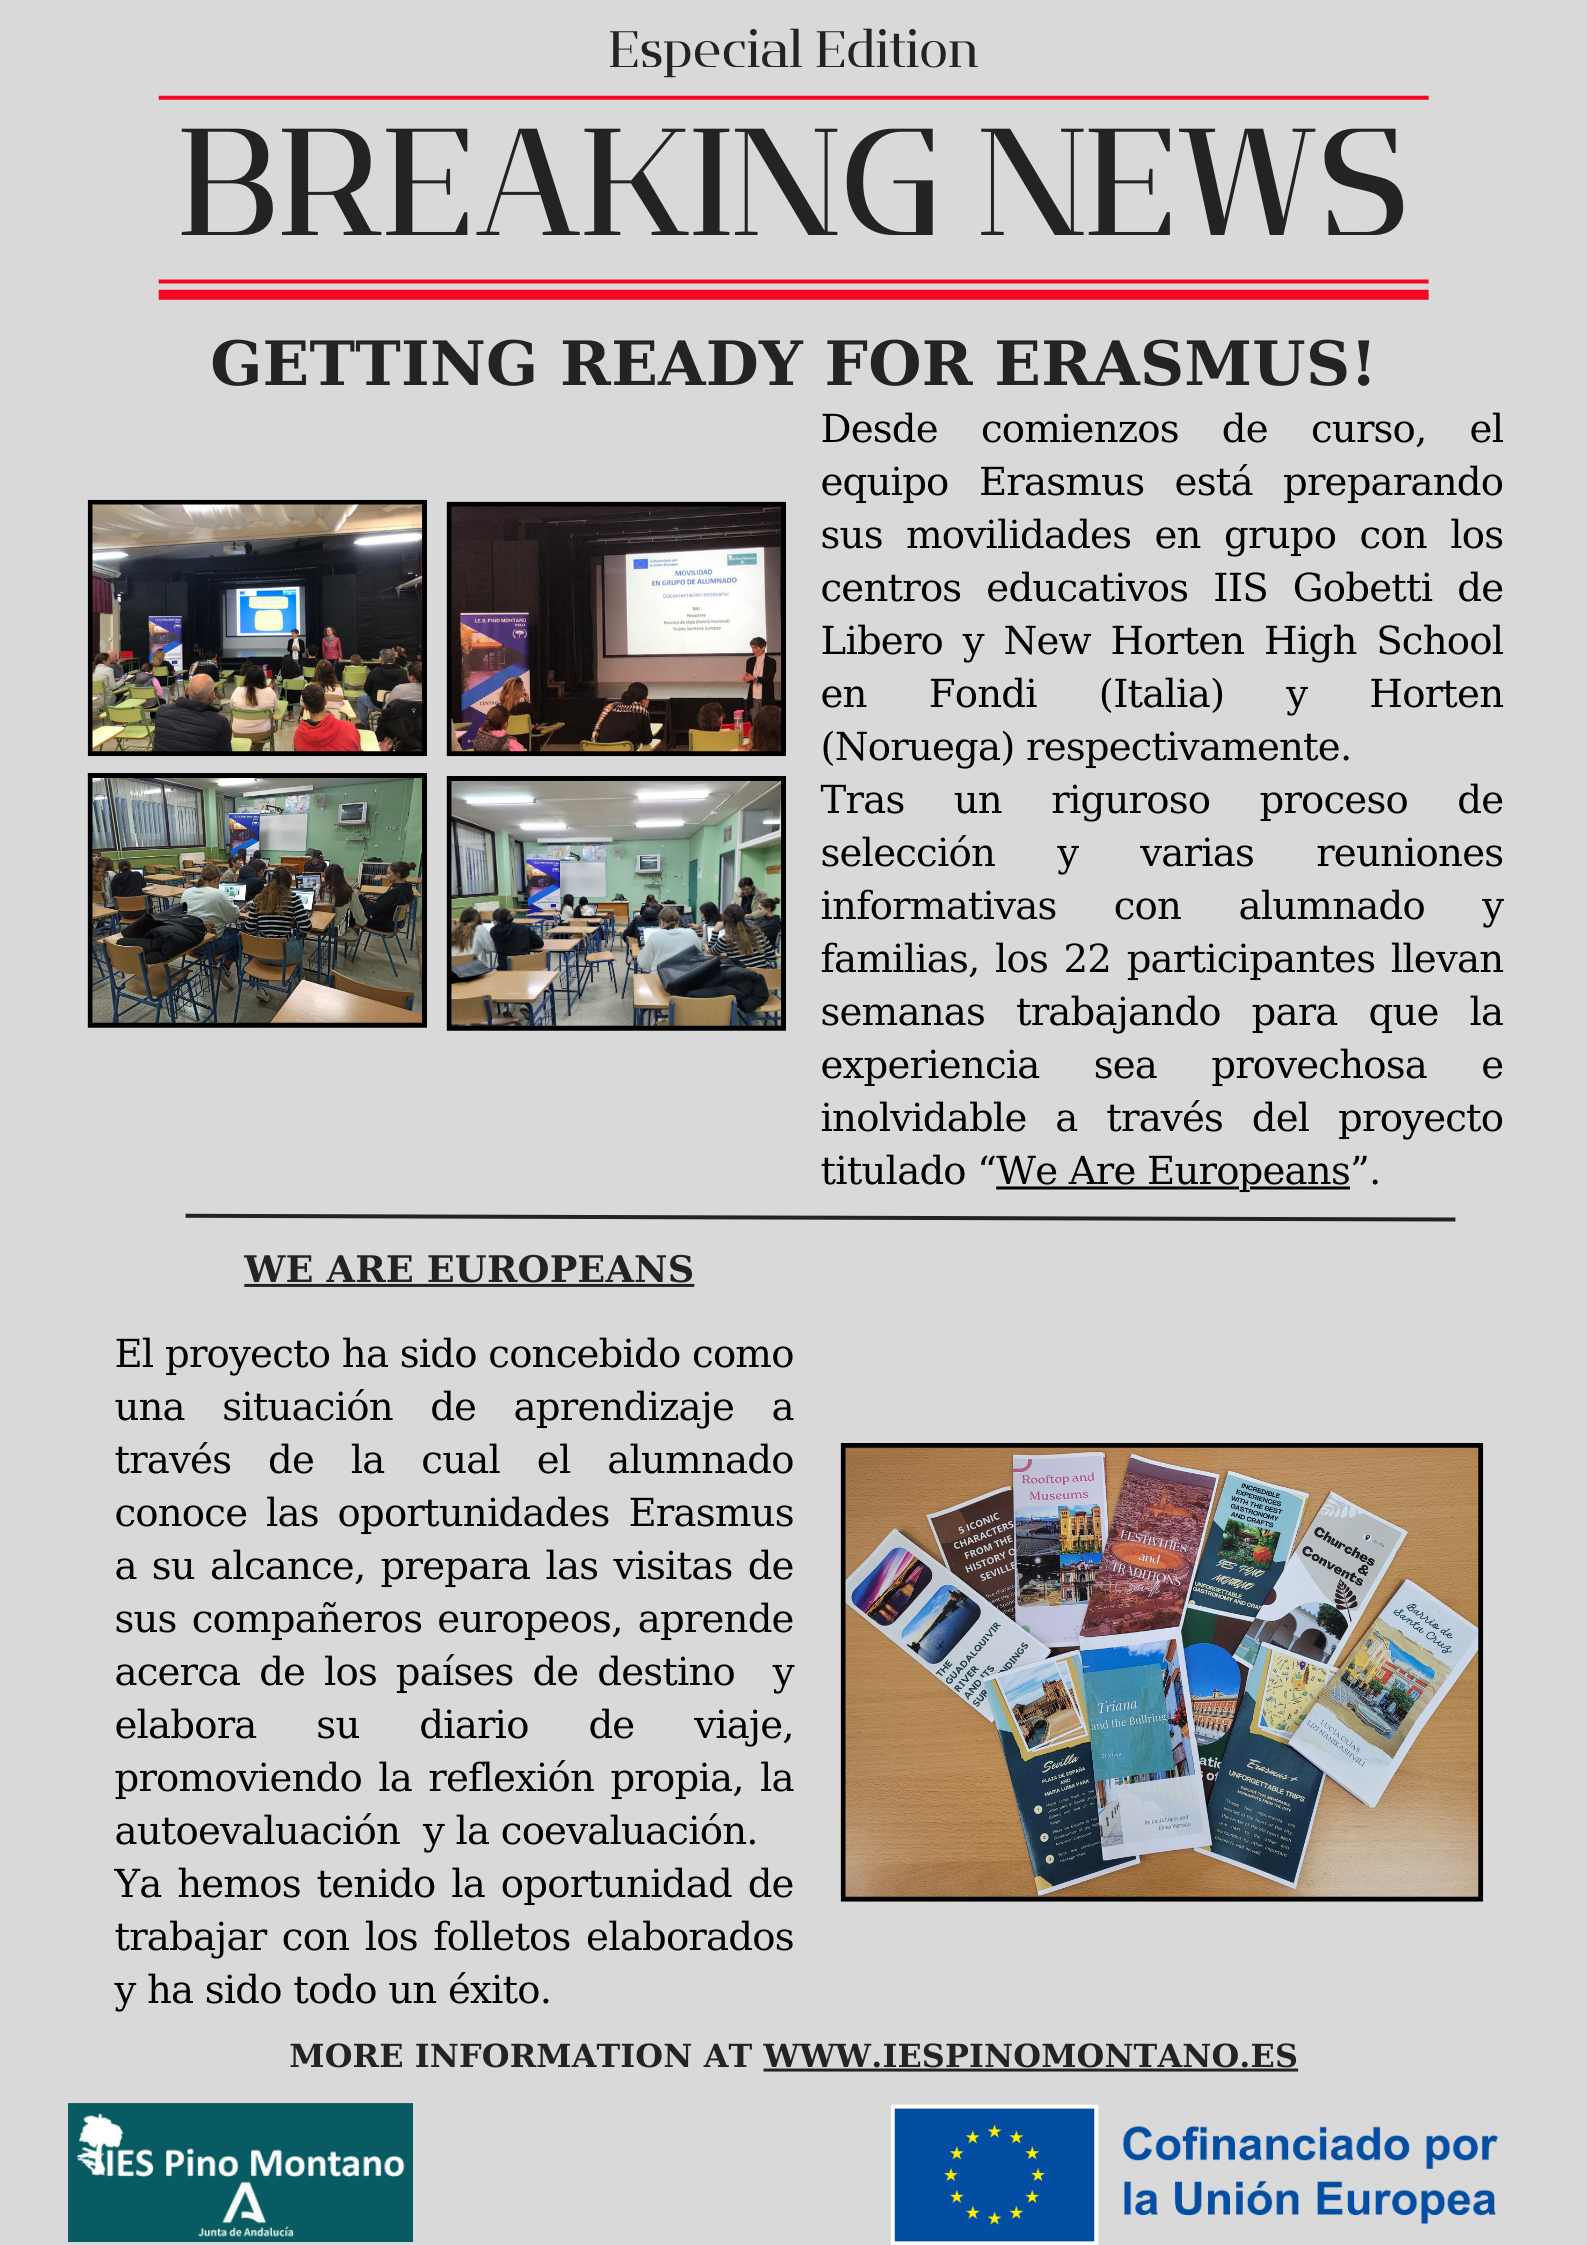 Getting Ready for Erasmus!